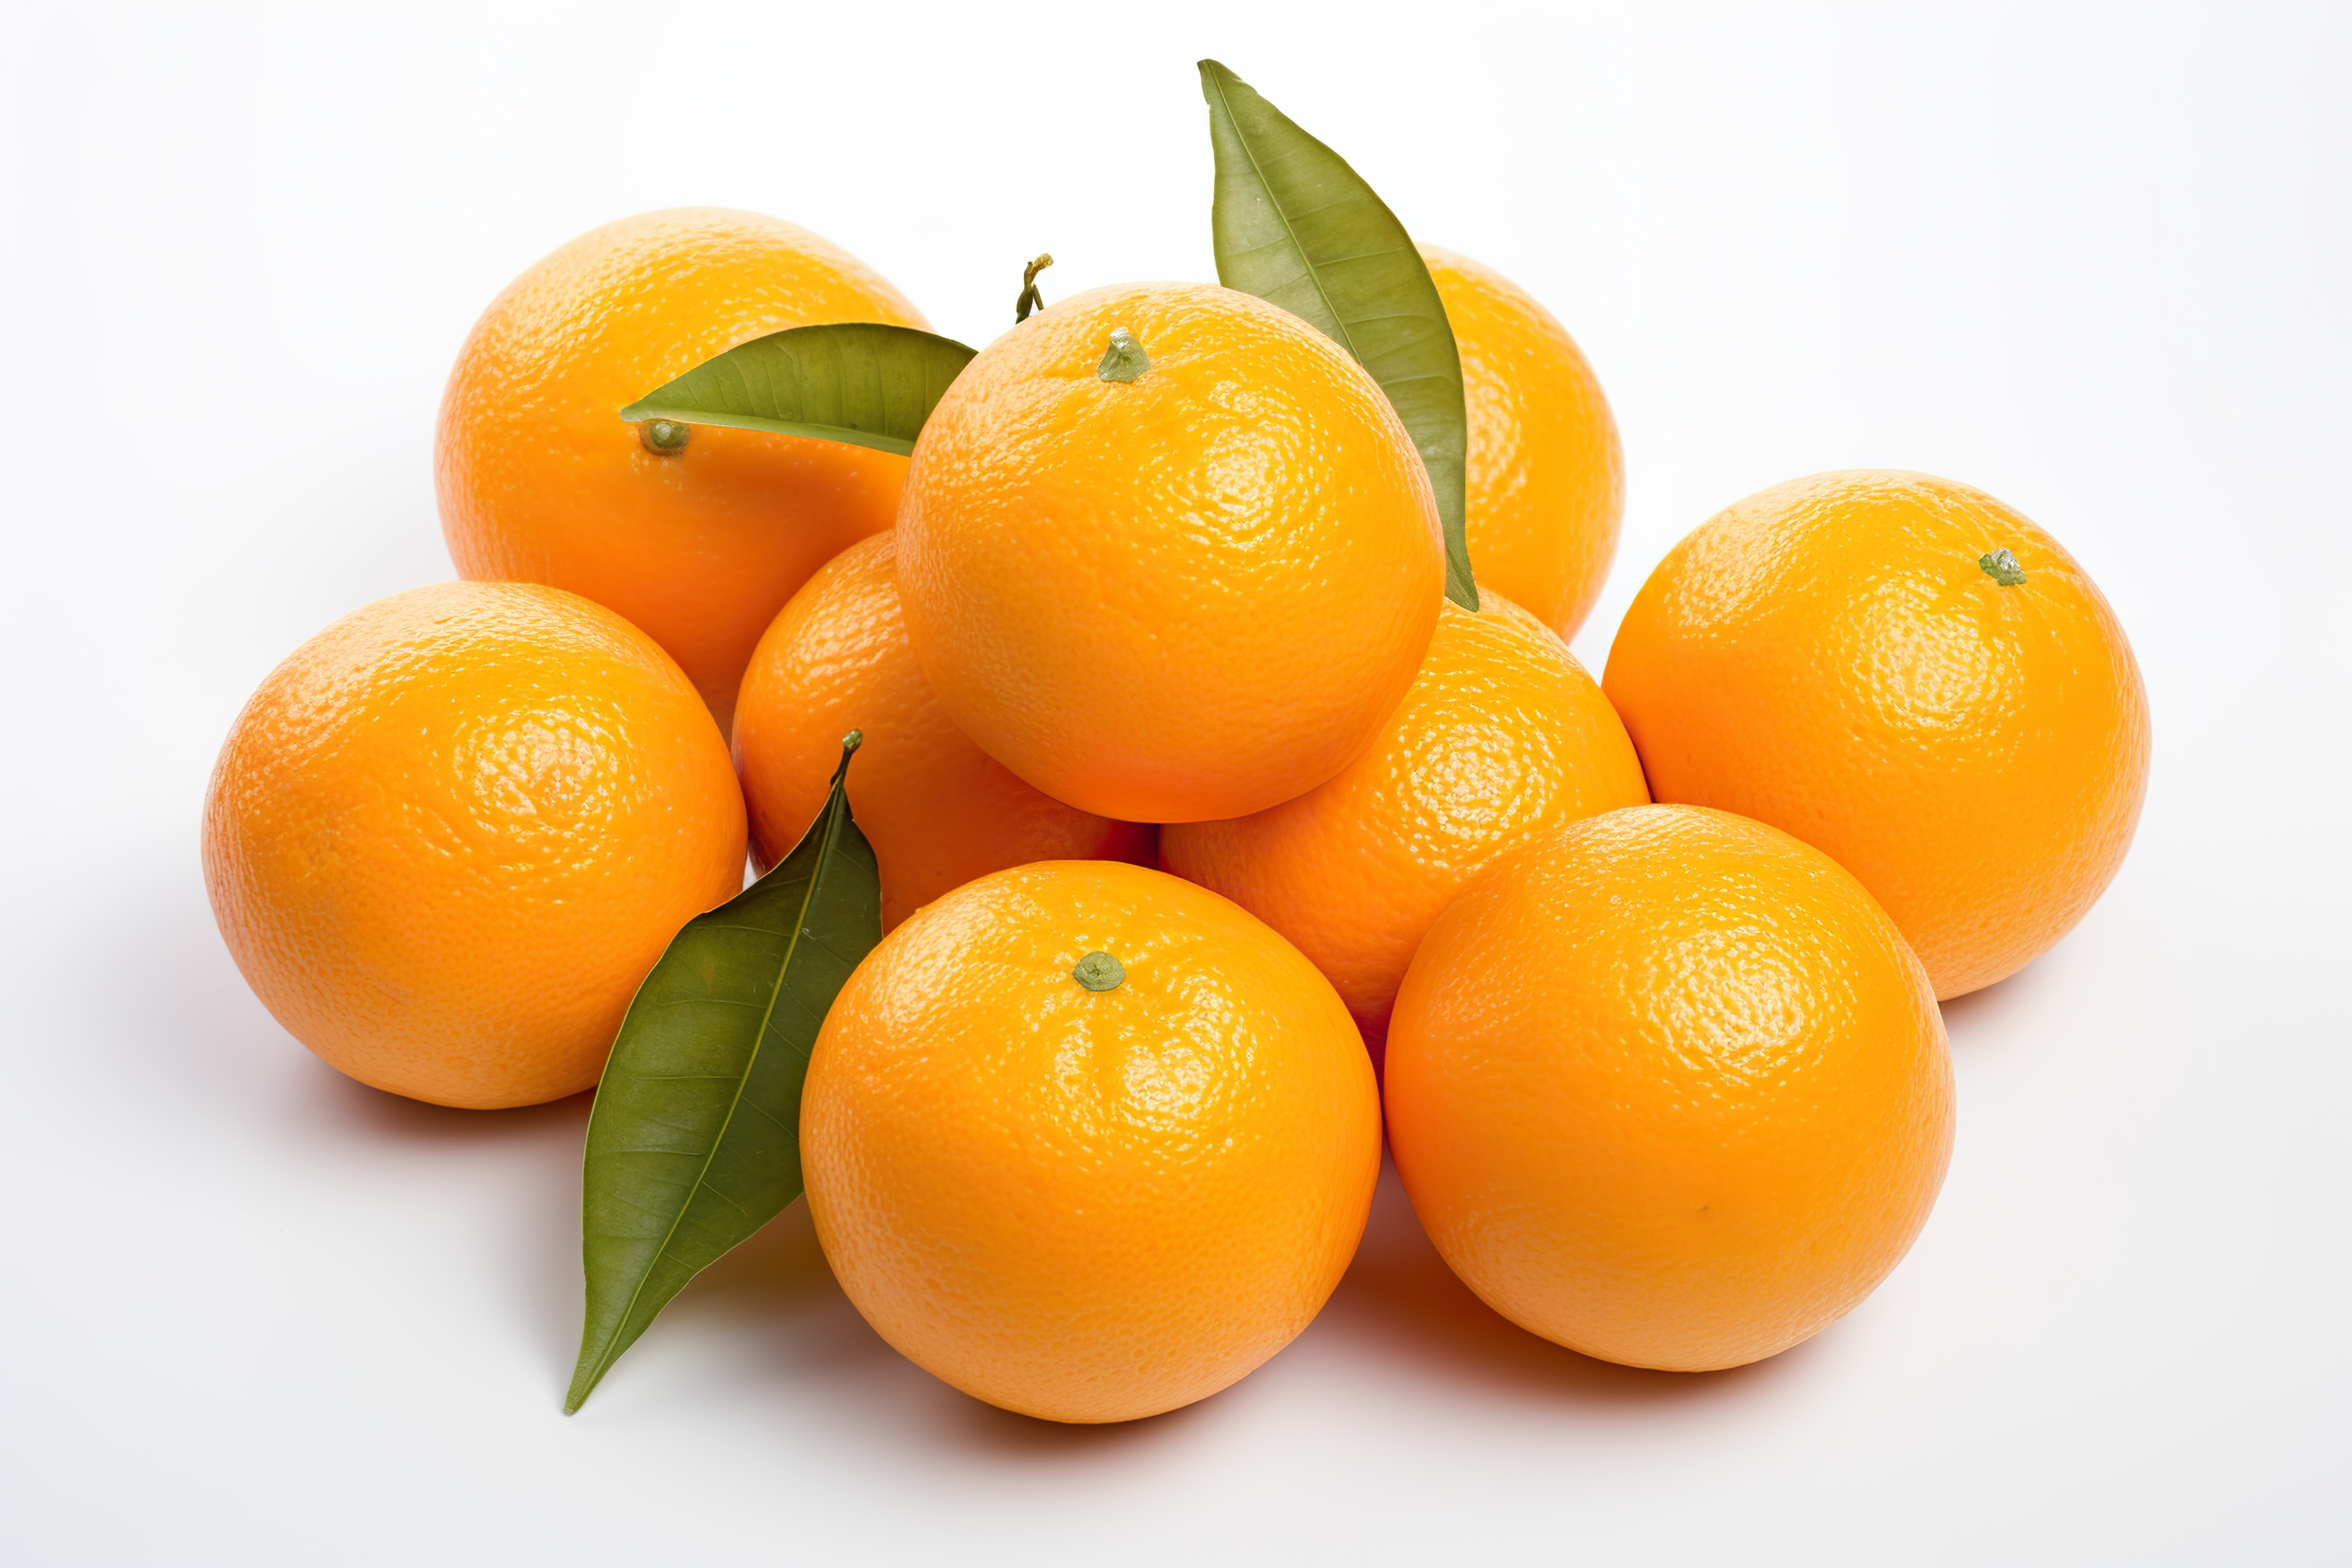 Orange fruit with leaves isolated on white background